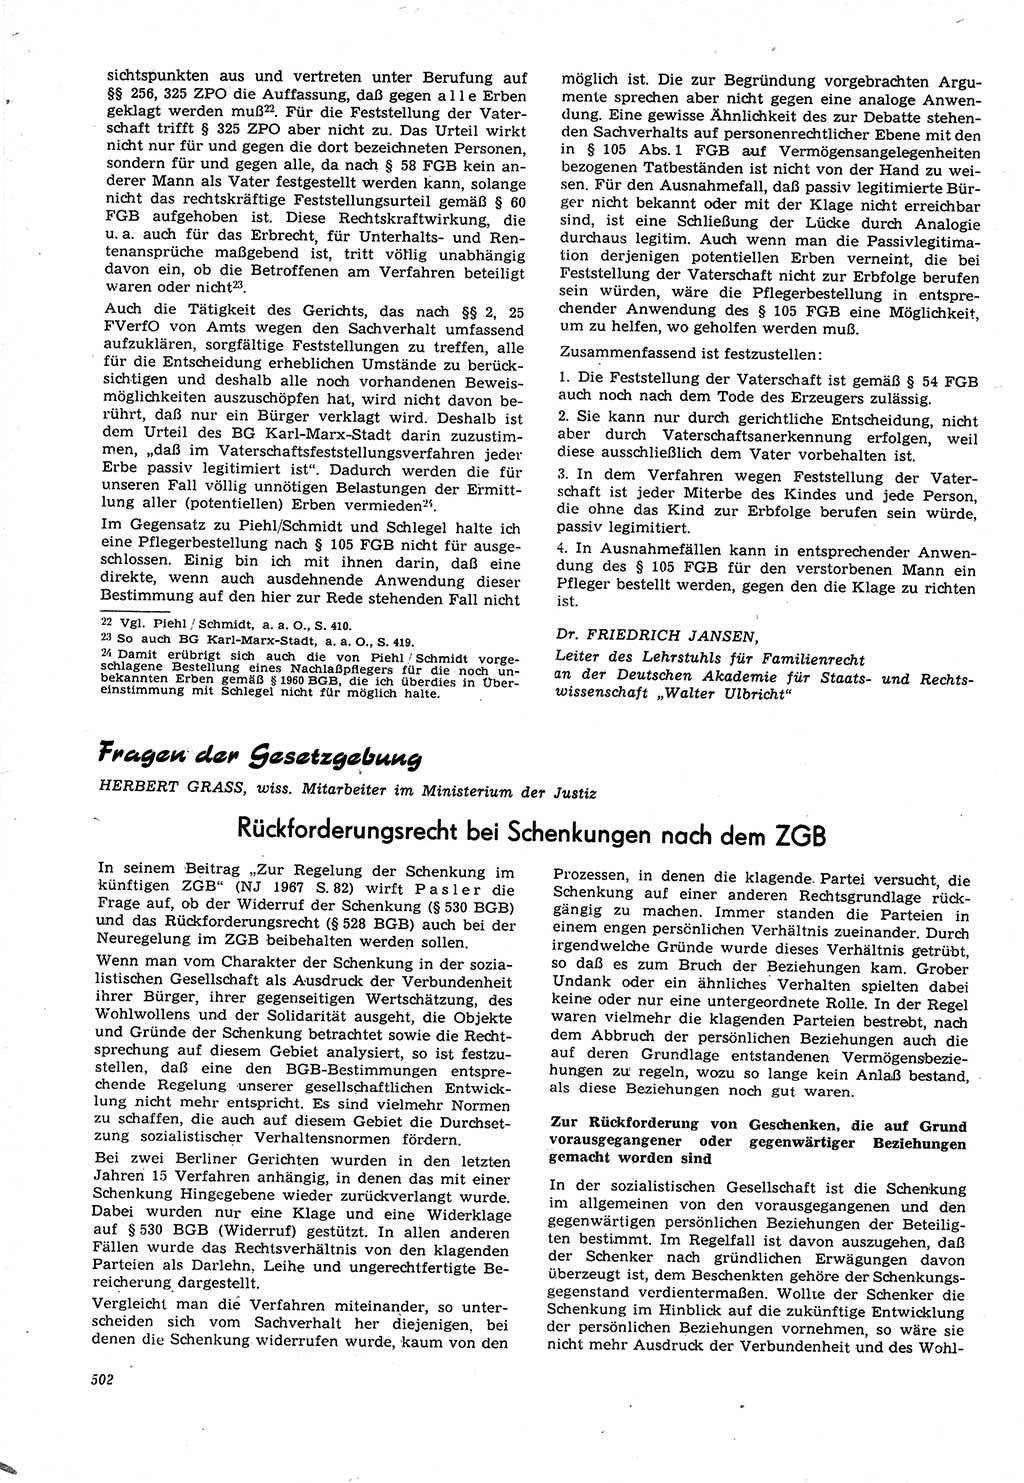 Neue Justiz (NJ), Zeitschrift für Recht und Rechtswissenschaft [Deutsche Demokratische Republik (DDR)], 21. Jahrgang 1967, Seite 502 (NJ DDR 1967, S. 502)